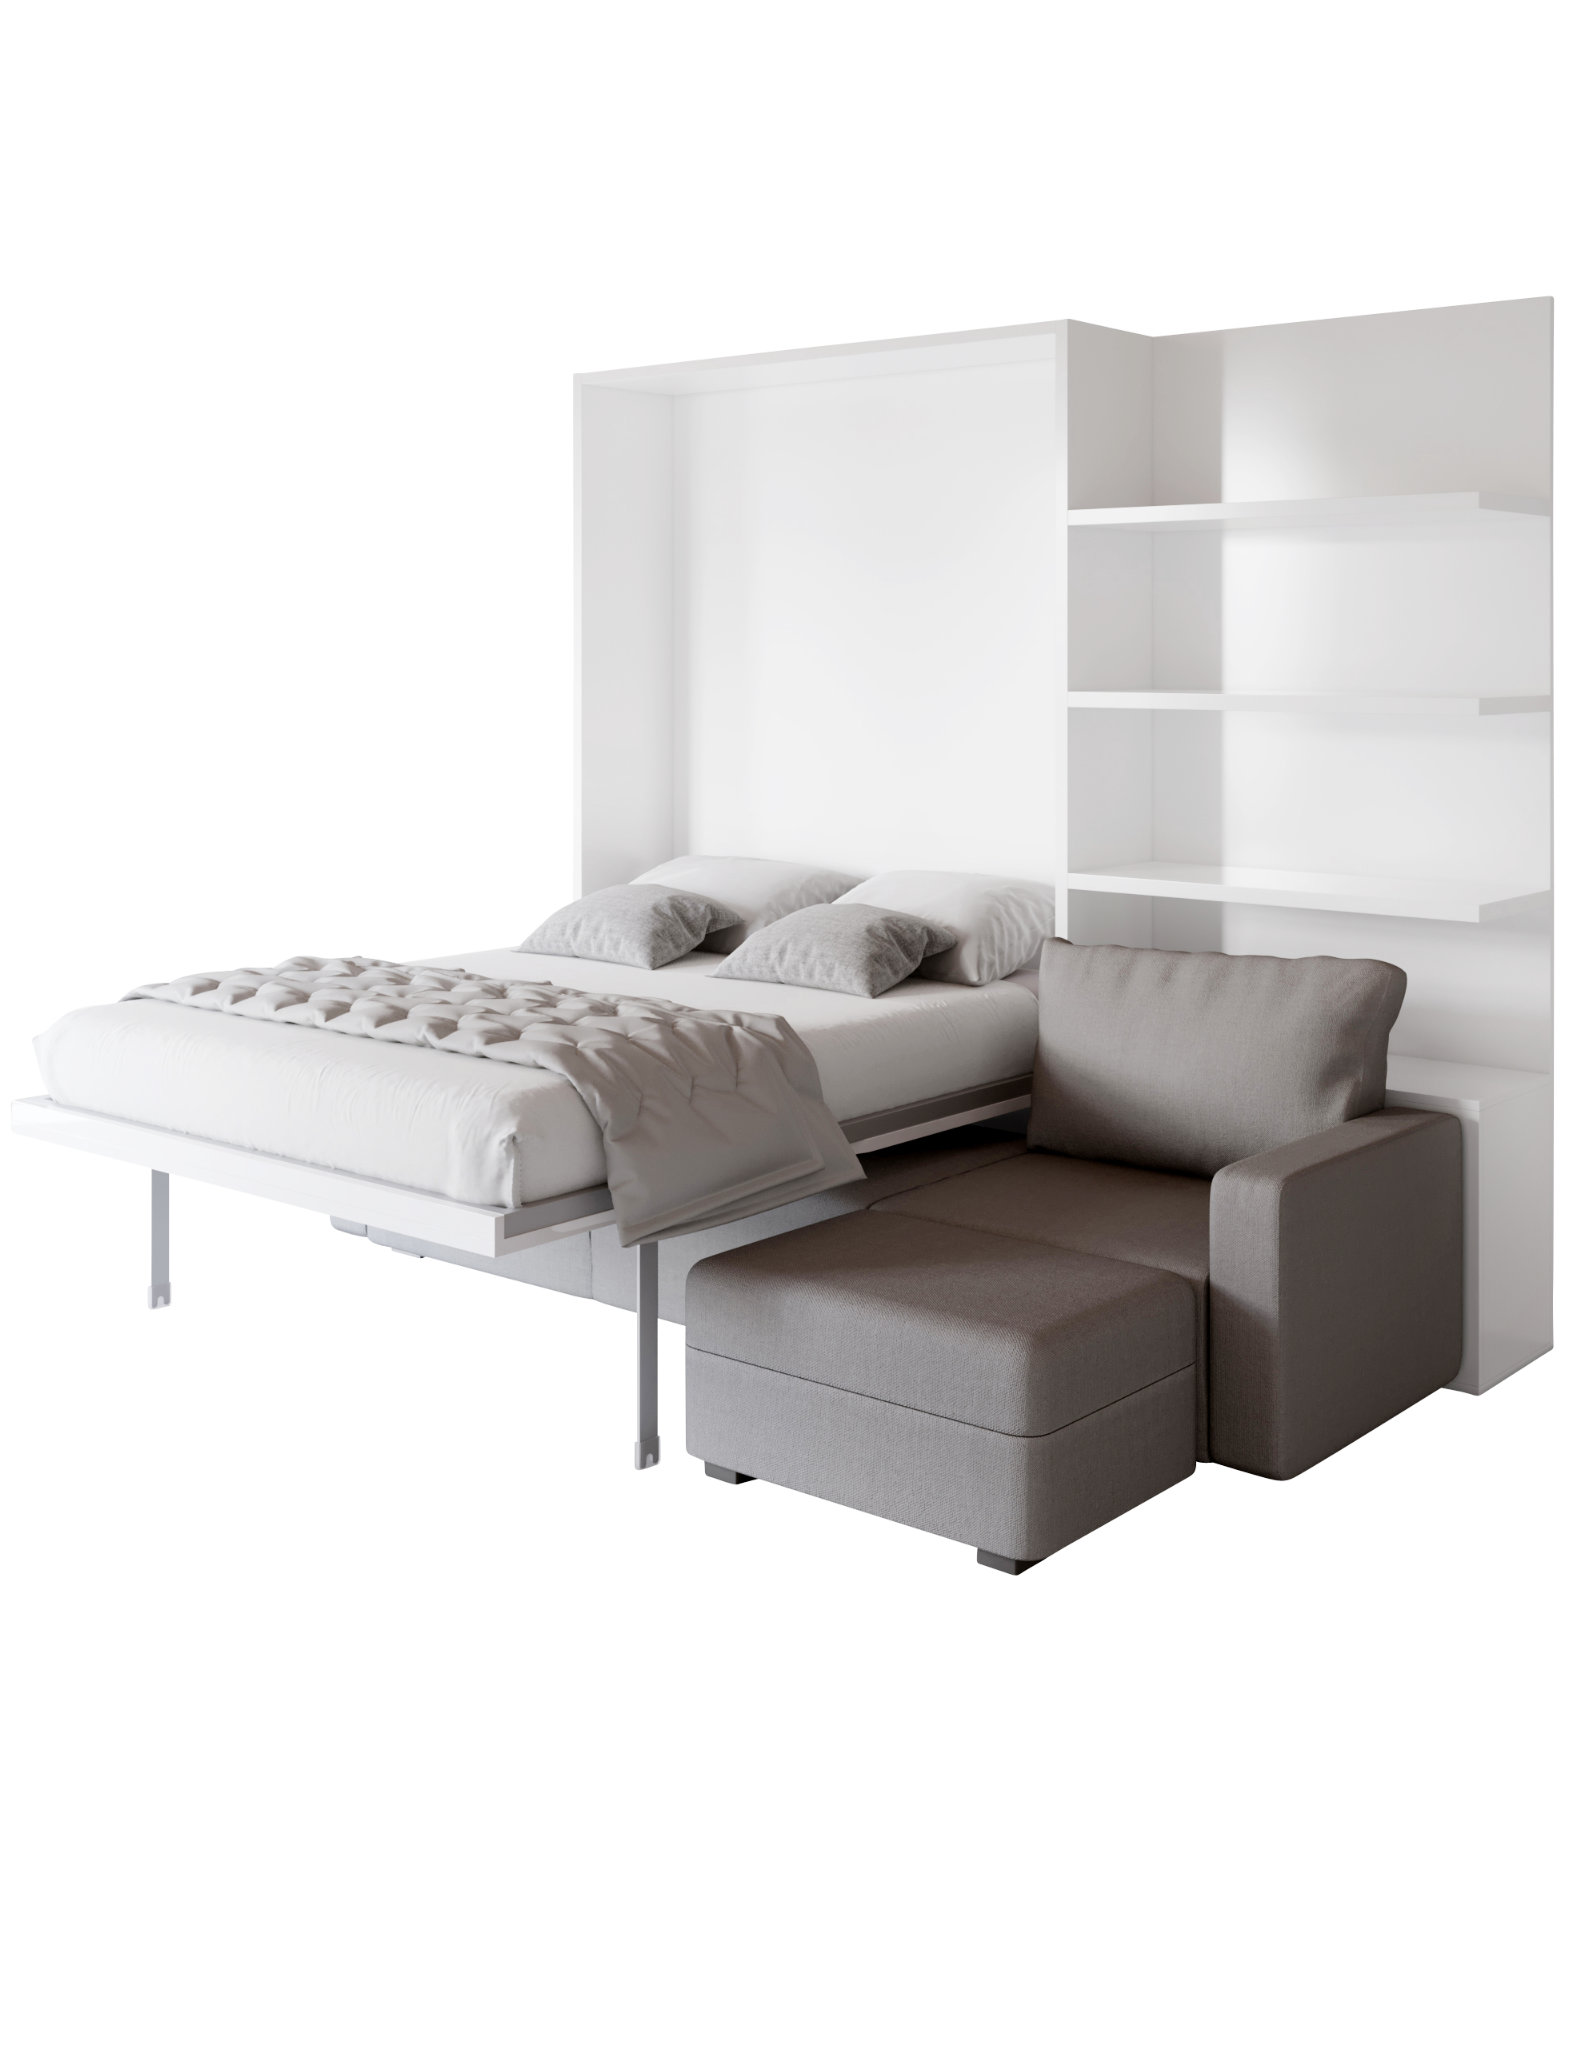 Wall Beds, Murphy Beds Hidden Beds Expand Furniture | atelier-yuwa.ciao.jp